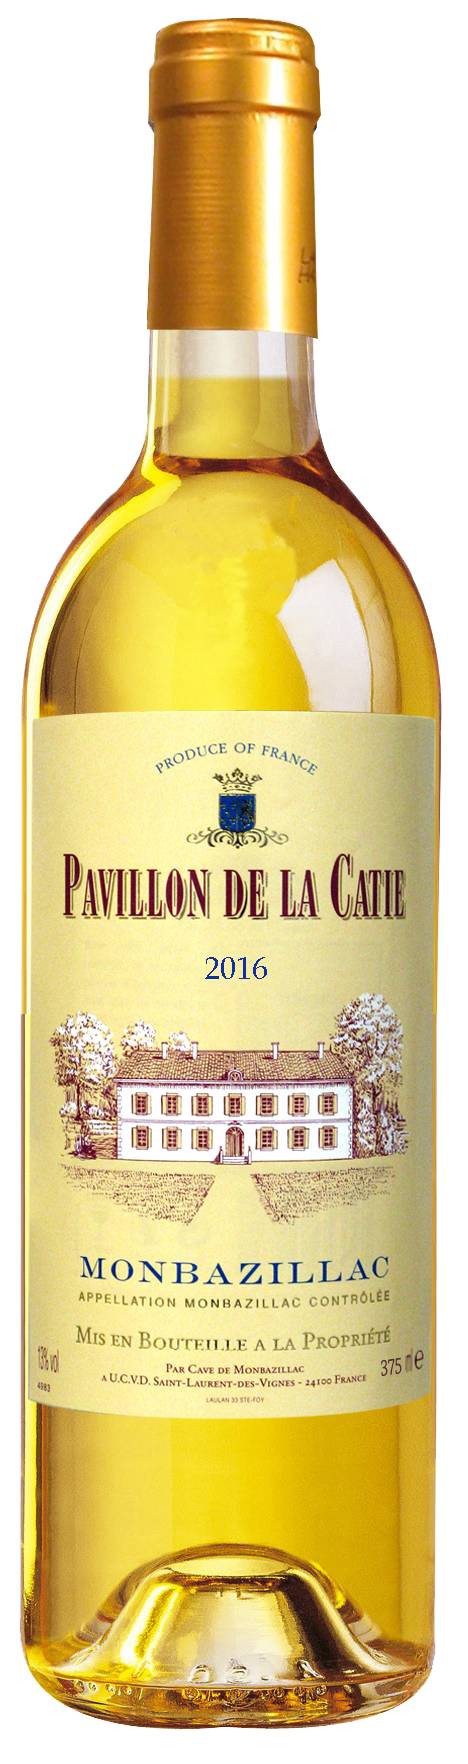 Pavillon de La Catie - Monbazillac wine 2016 (12.68 fl oz)